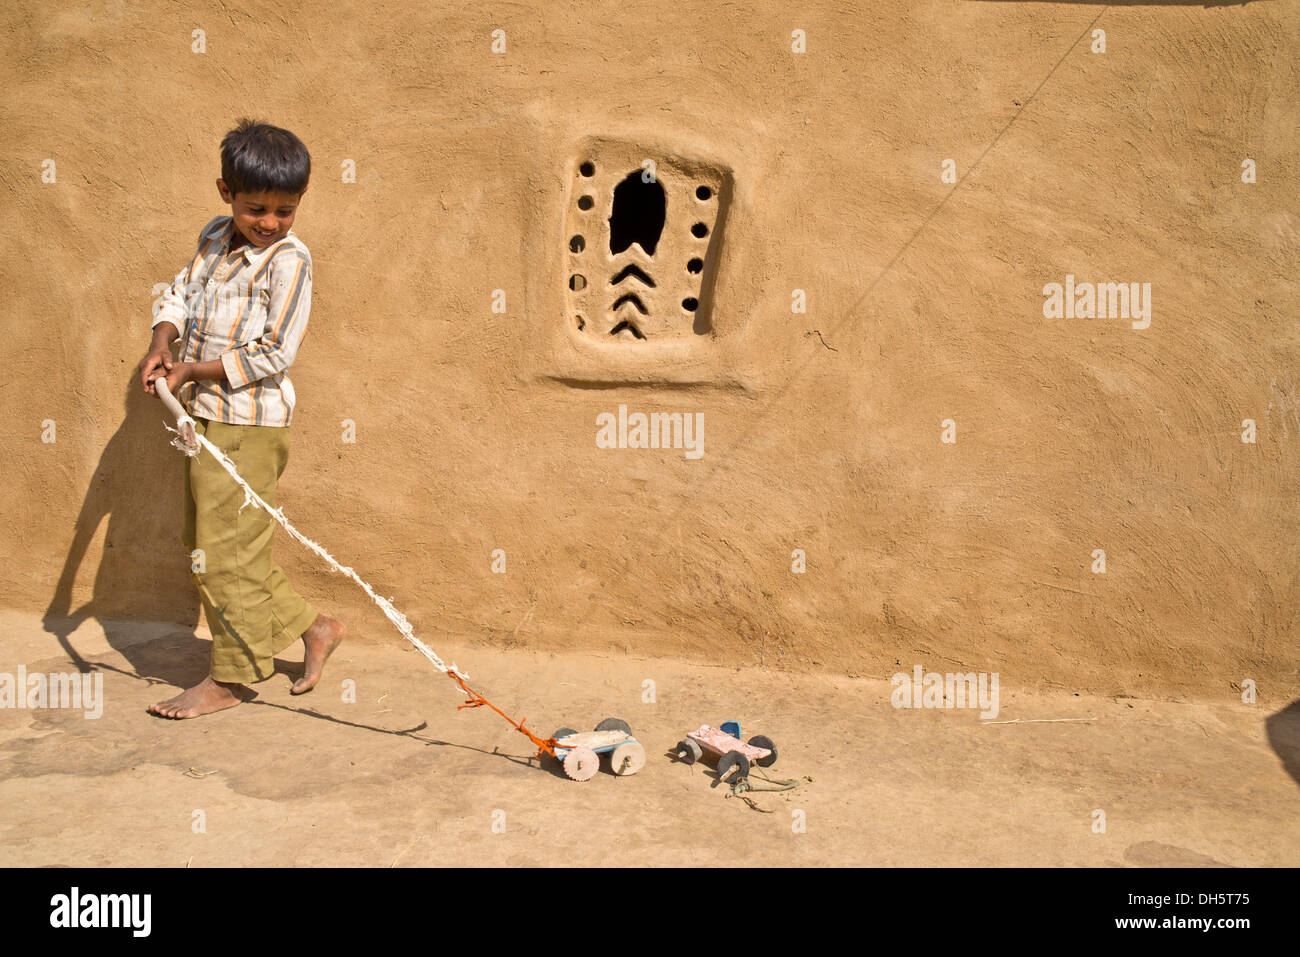 Junge spielt mit einem selbst gebastelten Spielzeugautos außerhalb ein Lehmhaus, Wüste Thar, Rajasthan, Indien Stockfoto